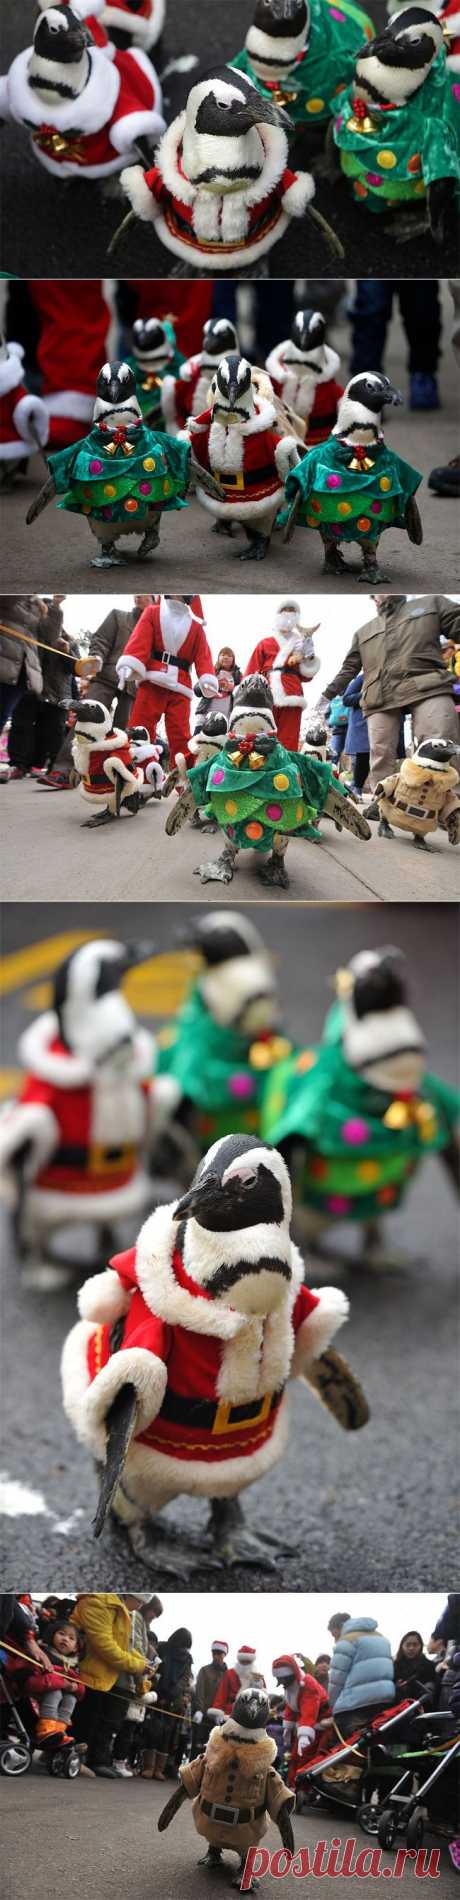 Рождественский парад Санта-Пингвинов в Южной Корее | В мире интересного